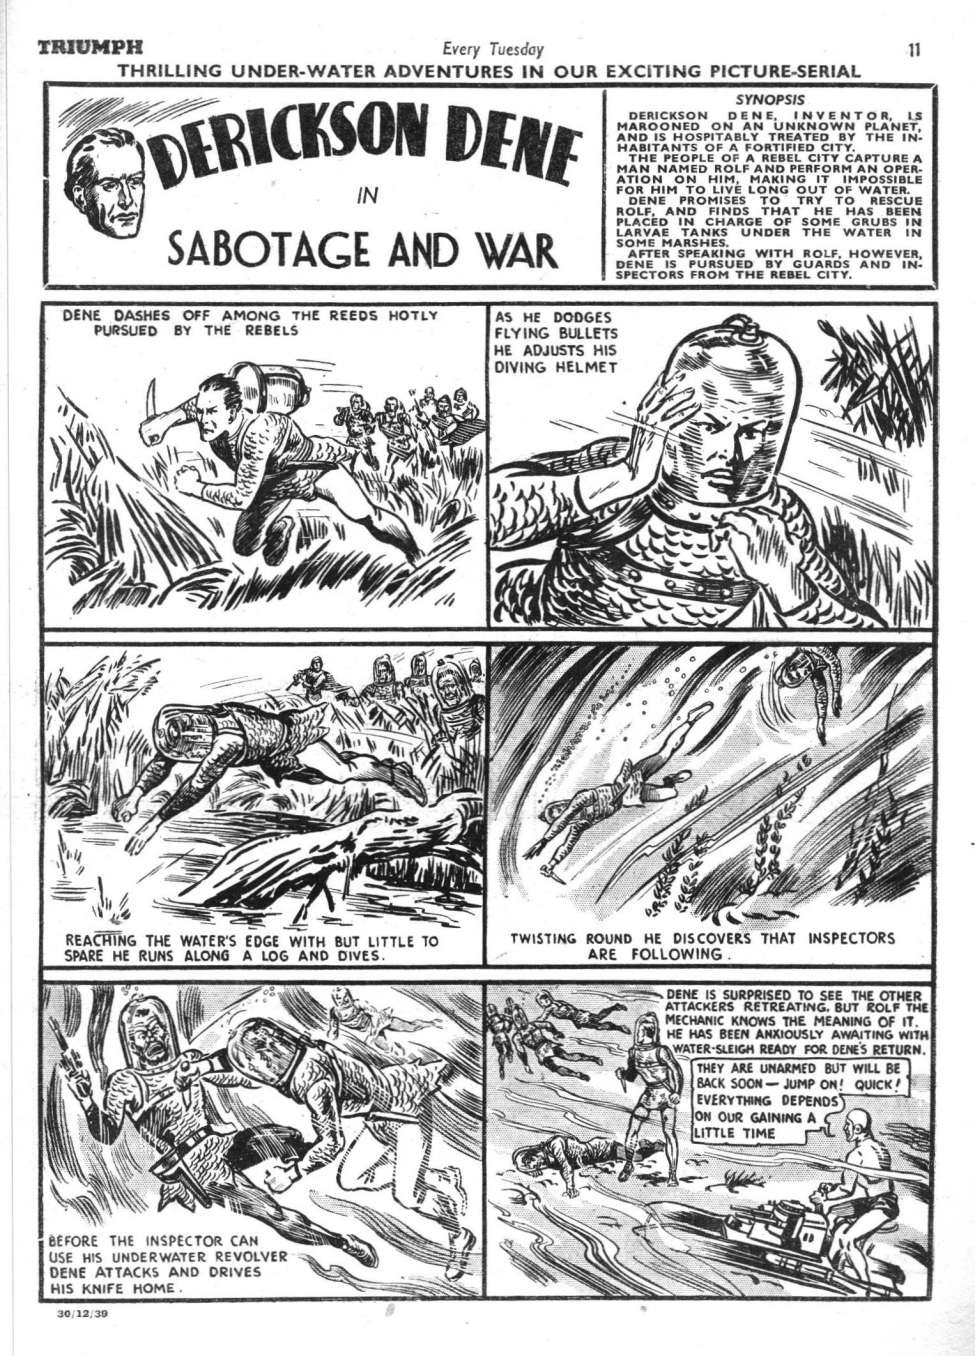 Comic Book Cover For Derickson Dene 1939